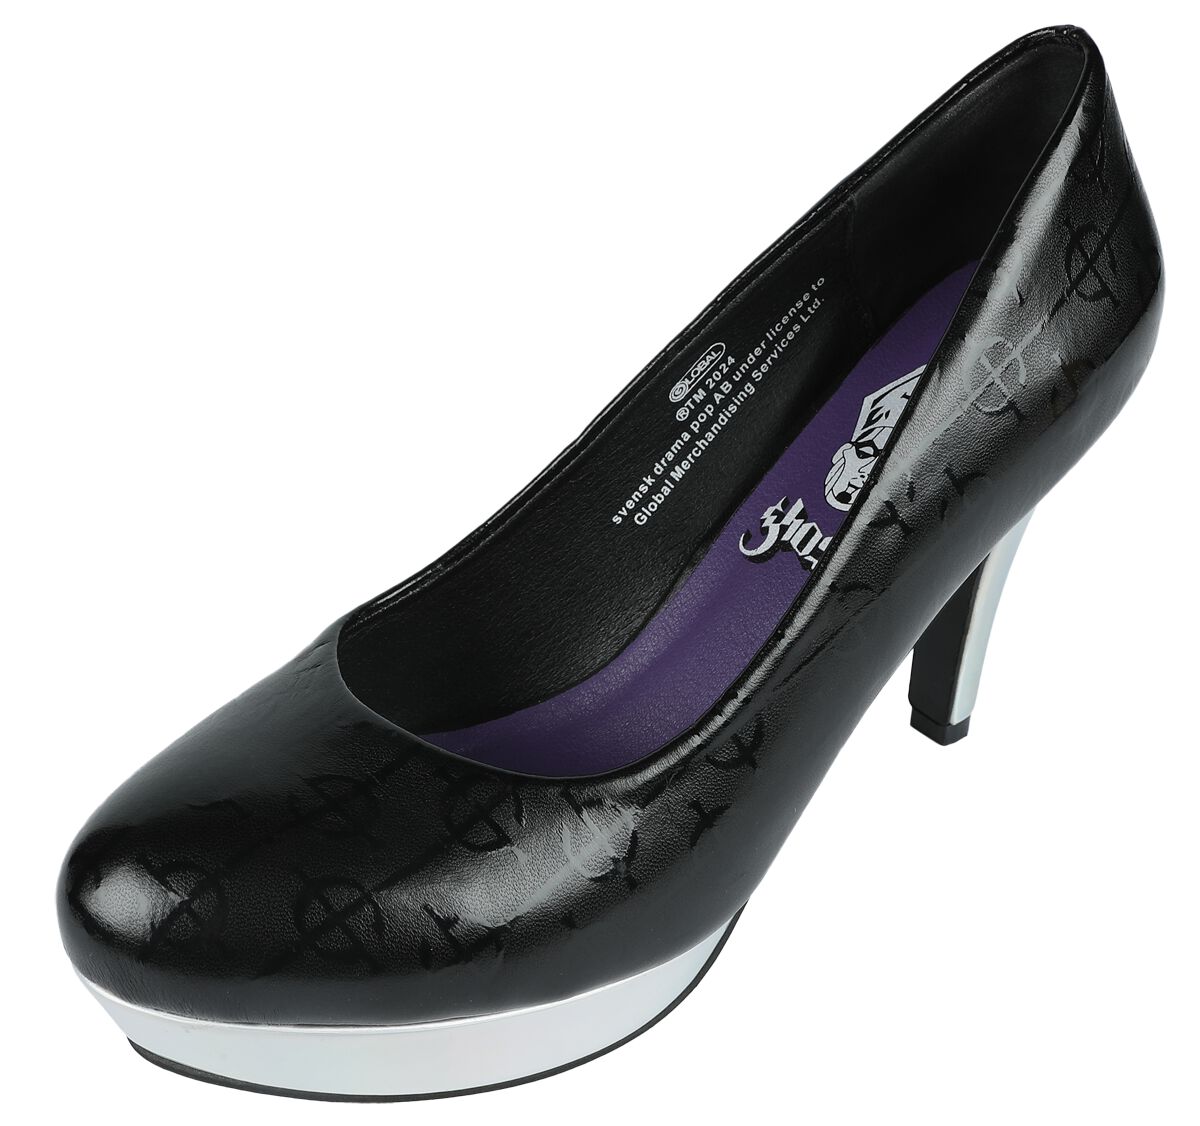 Ghost EMP Signature Collection High Heel schwarz silberfarben in EU41